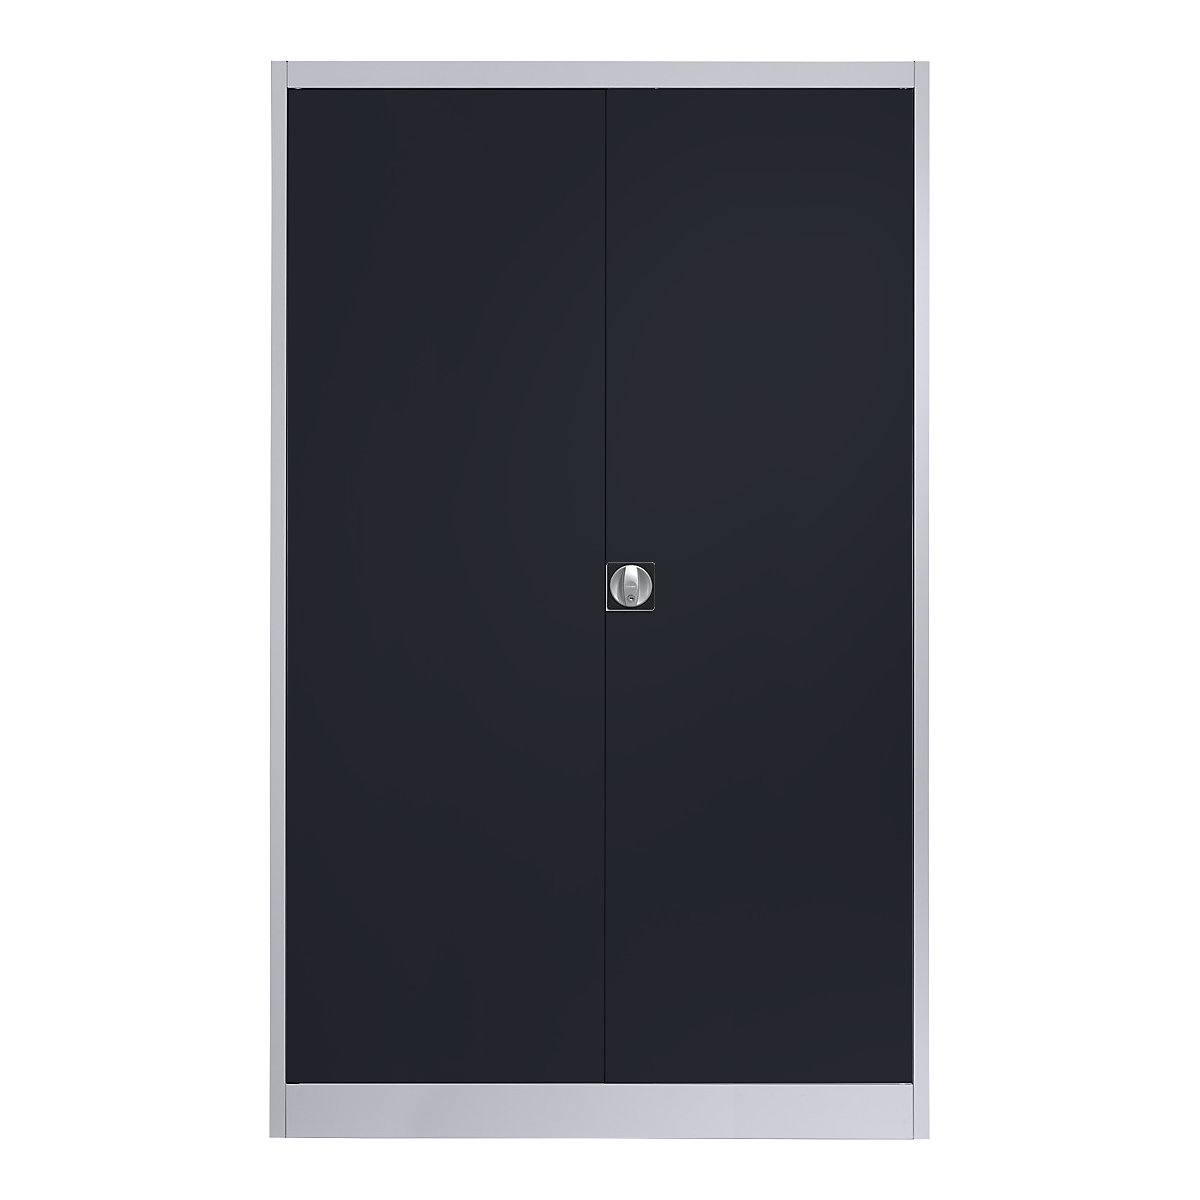 Szárnyas-ajtós acélszekrény – mauser, 4 polc, szélesség 1200 mm, fehéralumínium / antracitszürke, külső mélység 500 mm-10